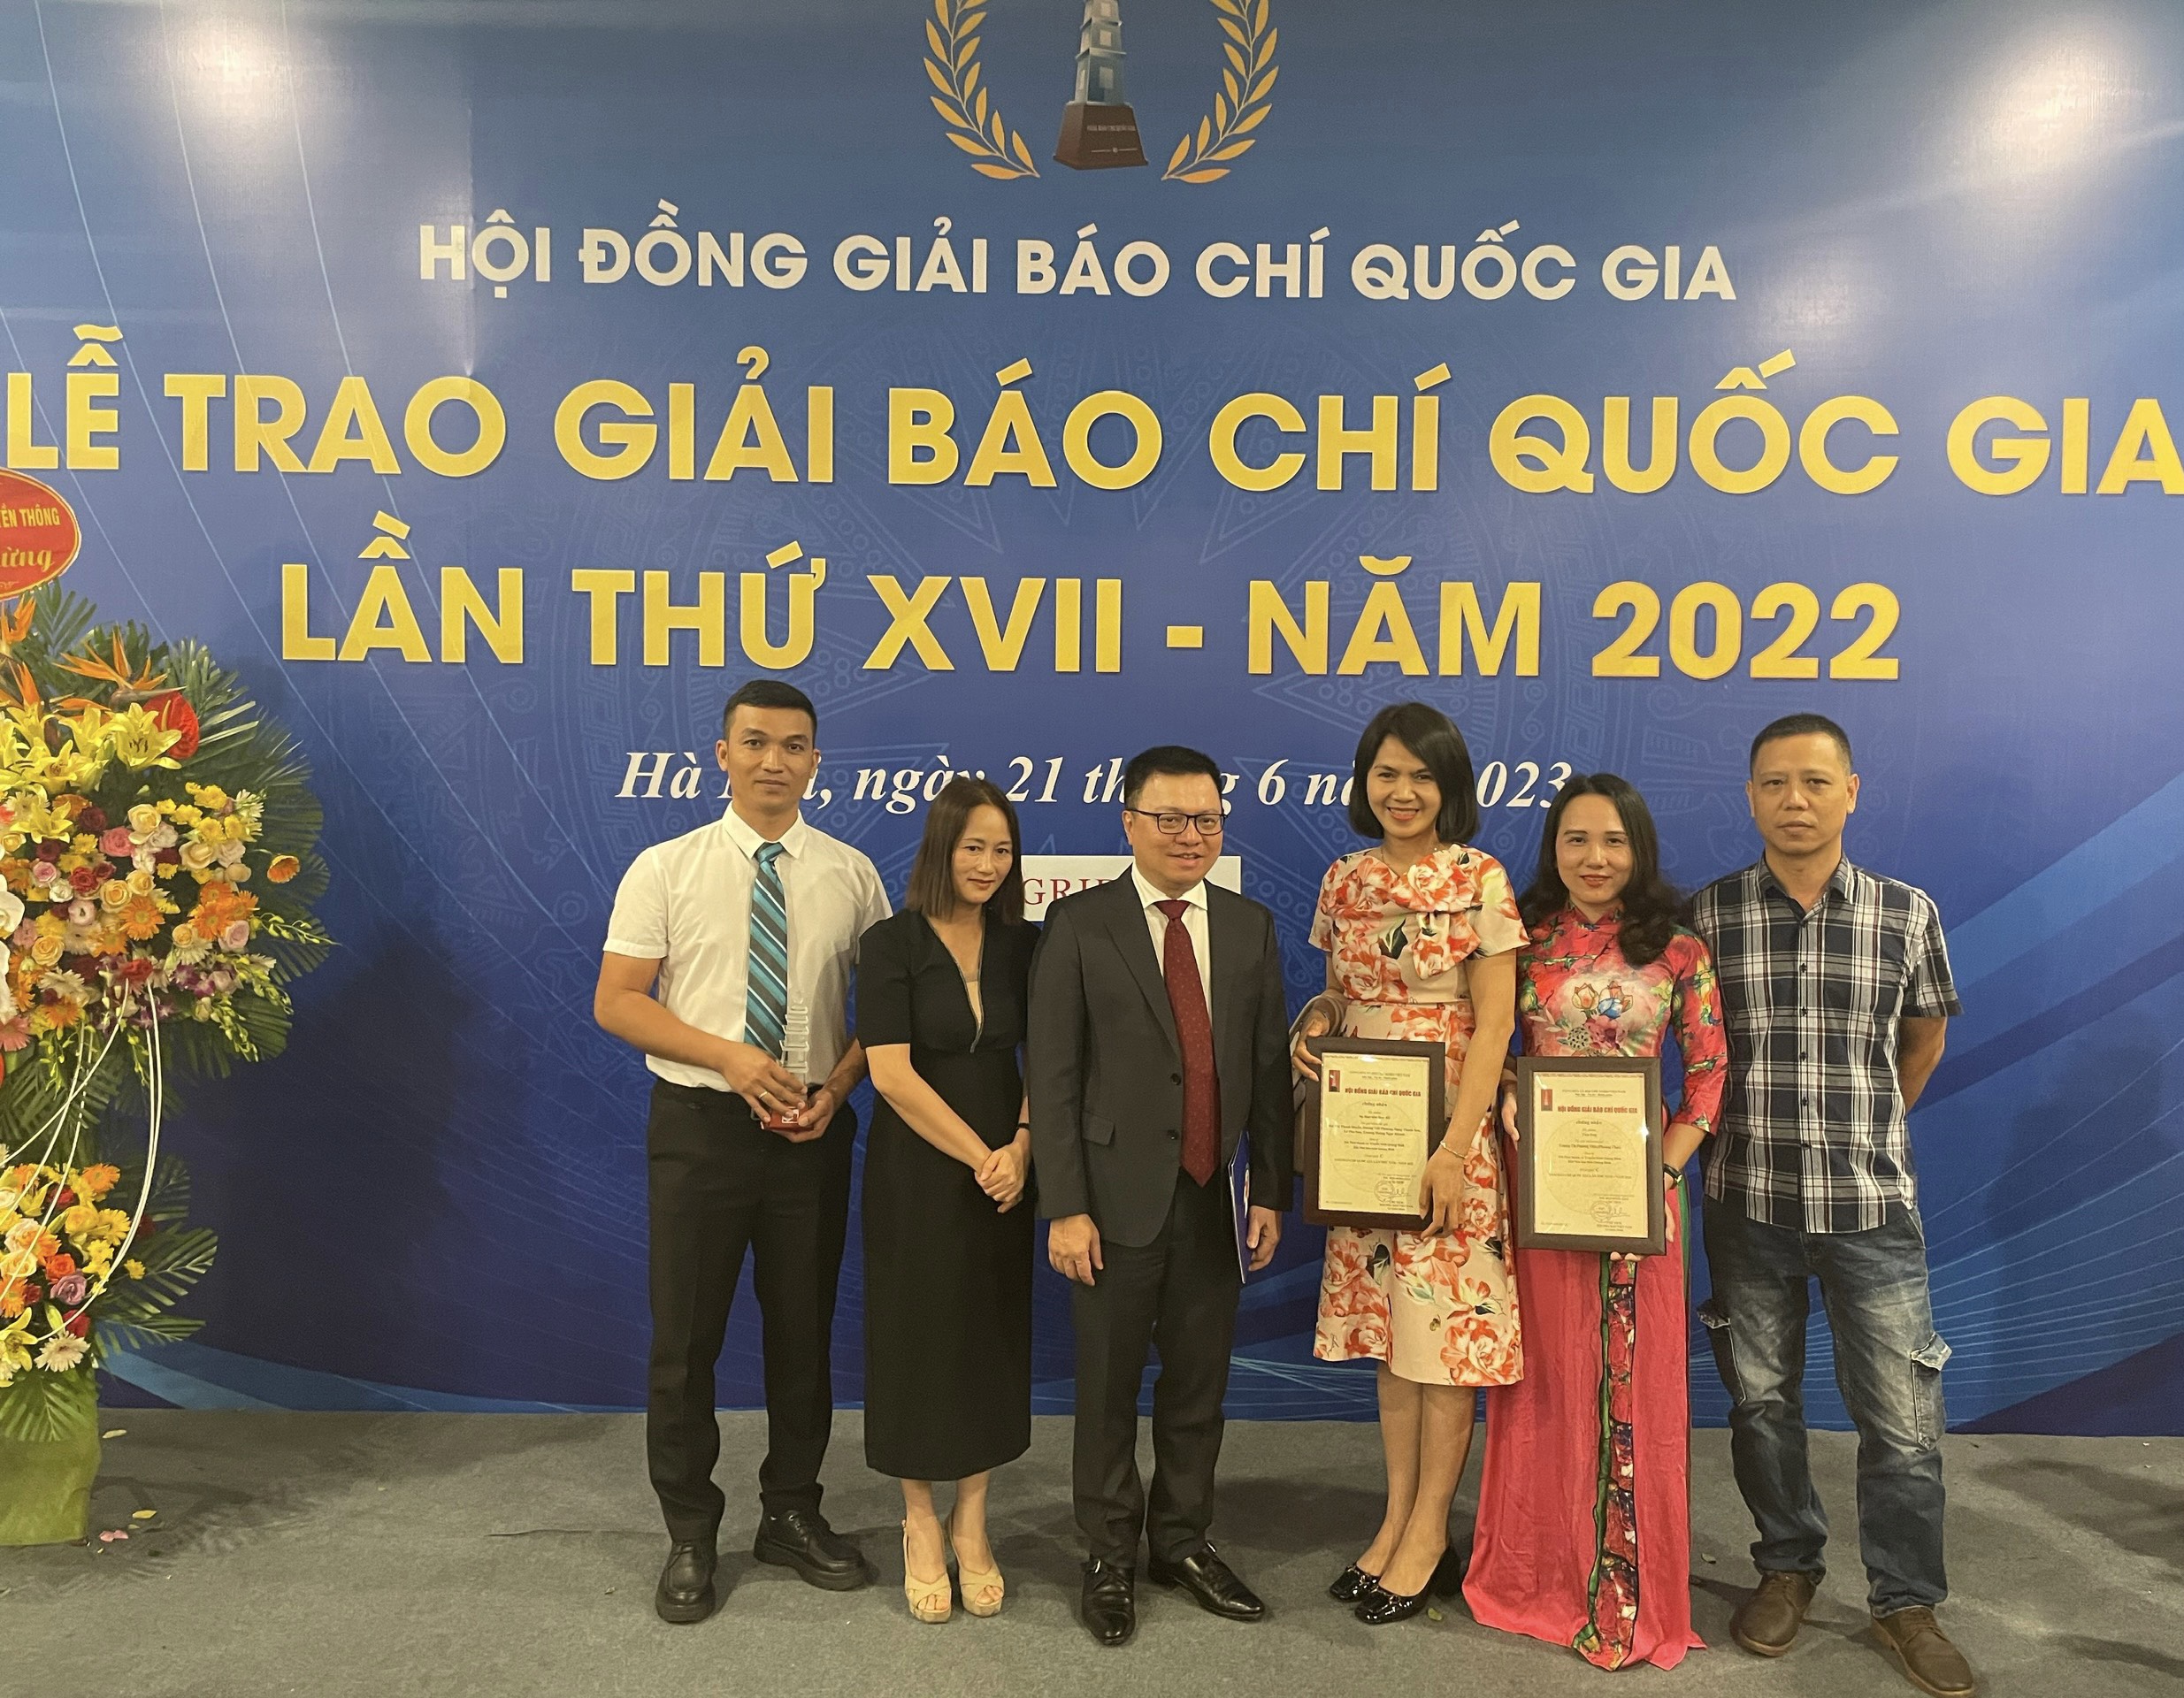 Quảng Bình đoạt giải cao tại Giải Báo chí quốc gia lần thứ XVII năm 2022